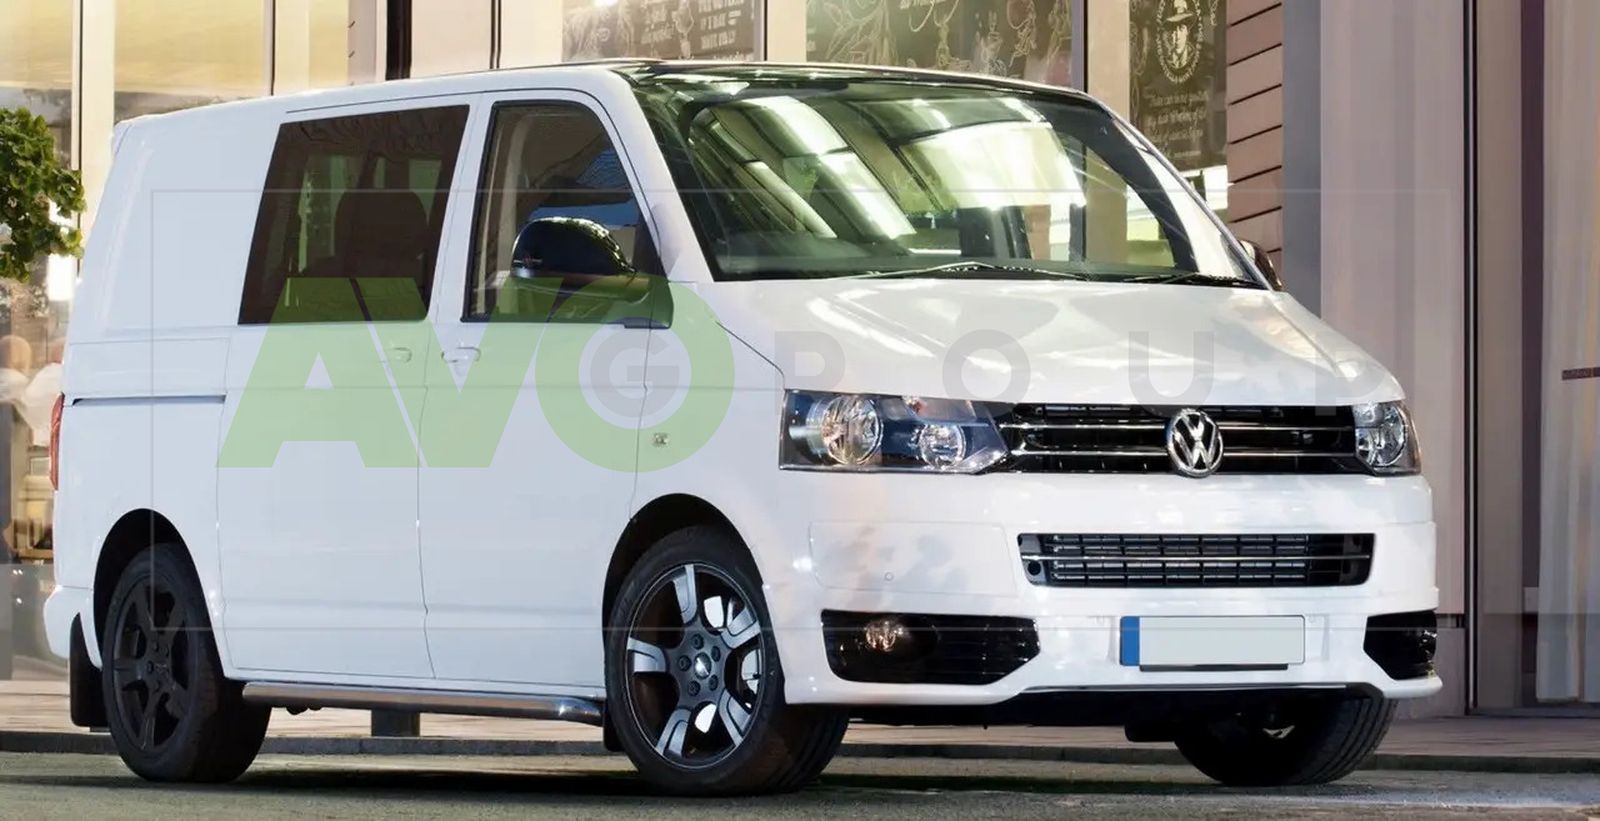 Front Bumper Add-on Spoiler for VW Transporter Multivan Caravelle T5.1 2009-2010 Sportline Design